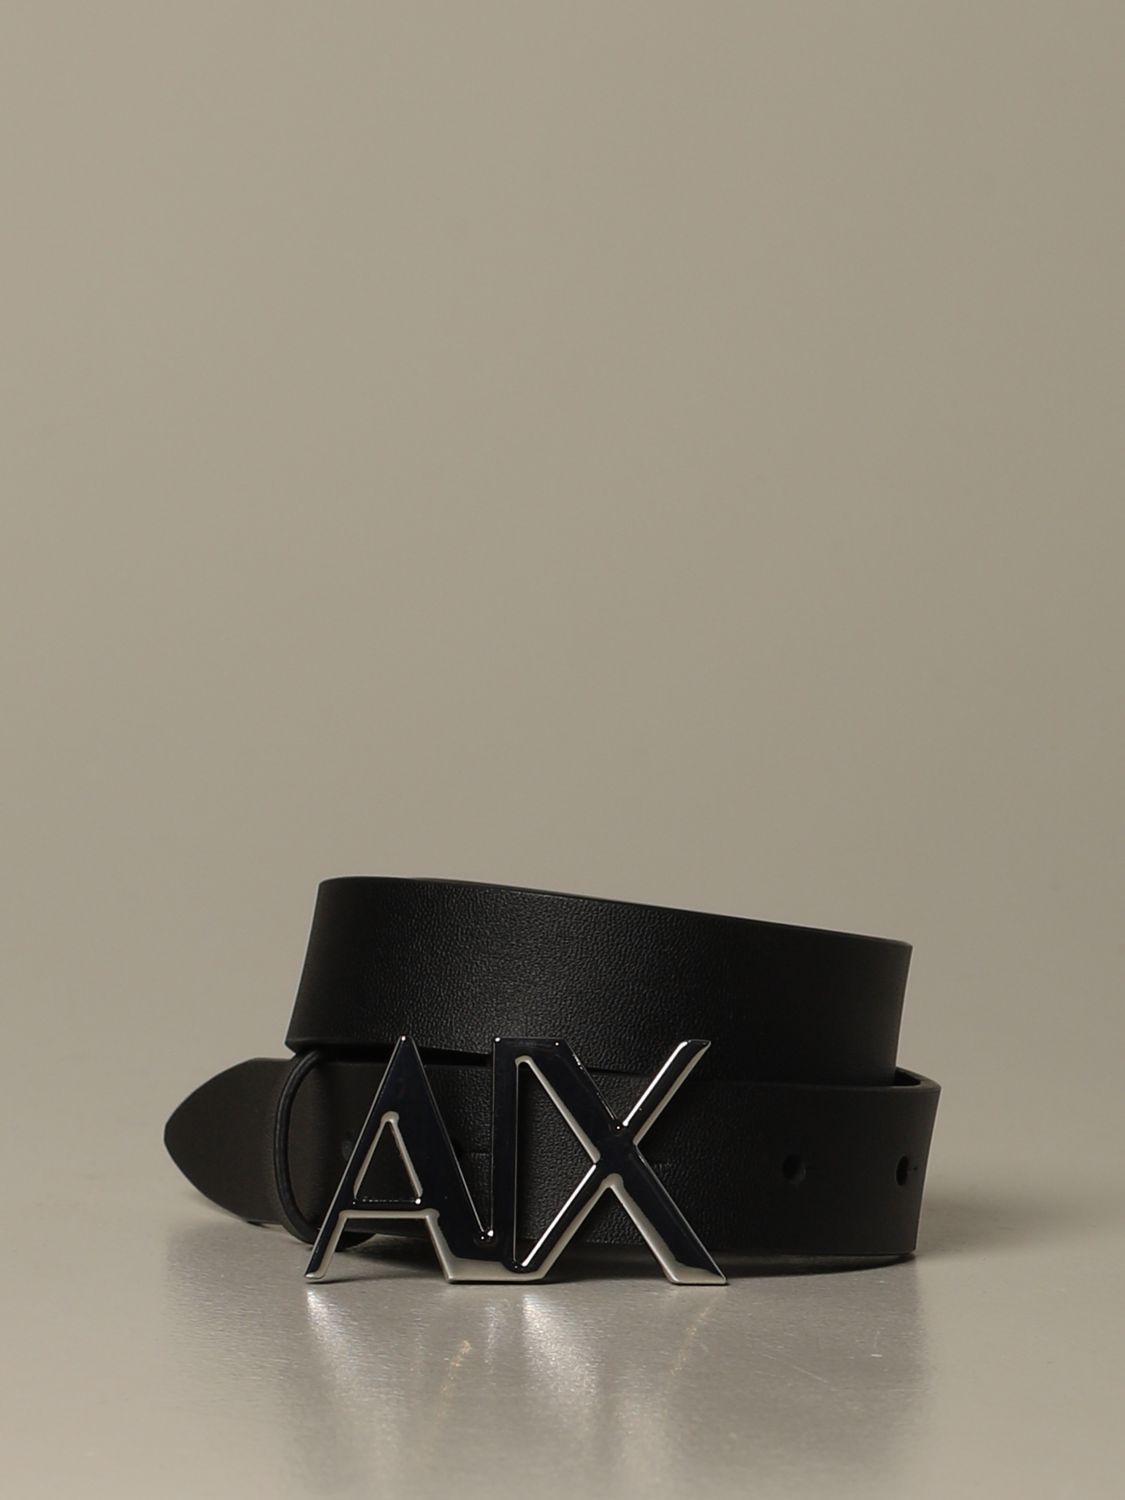 ax logo belt